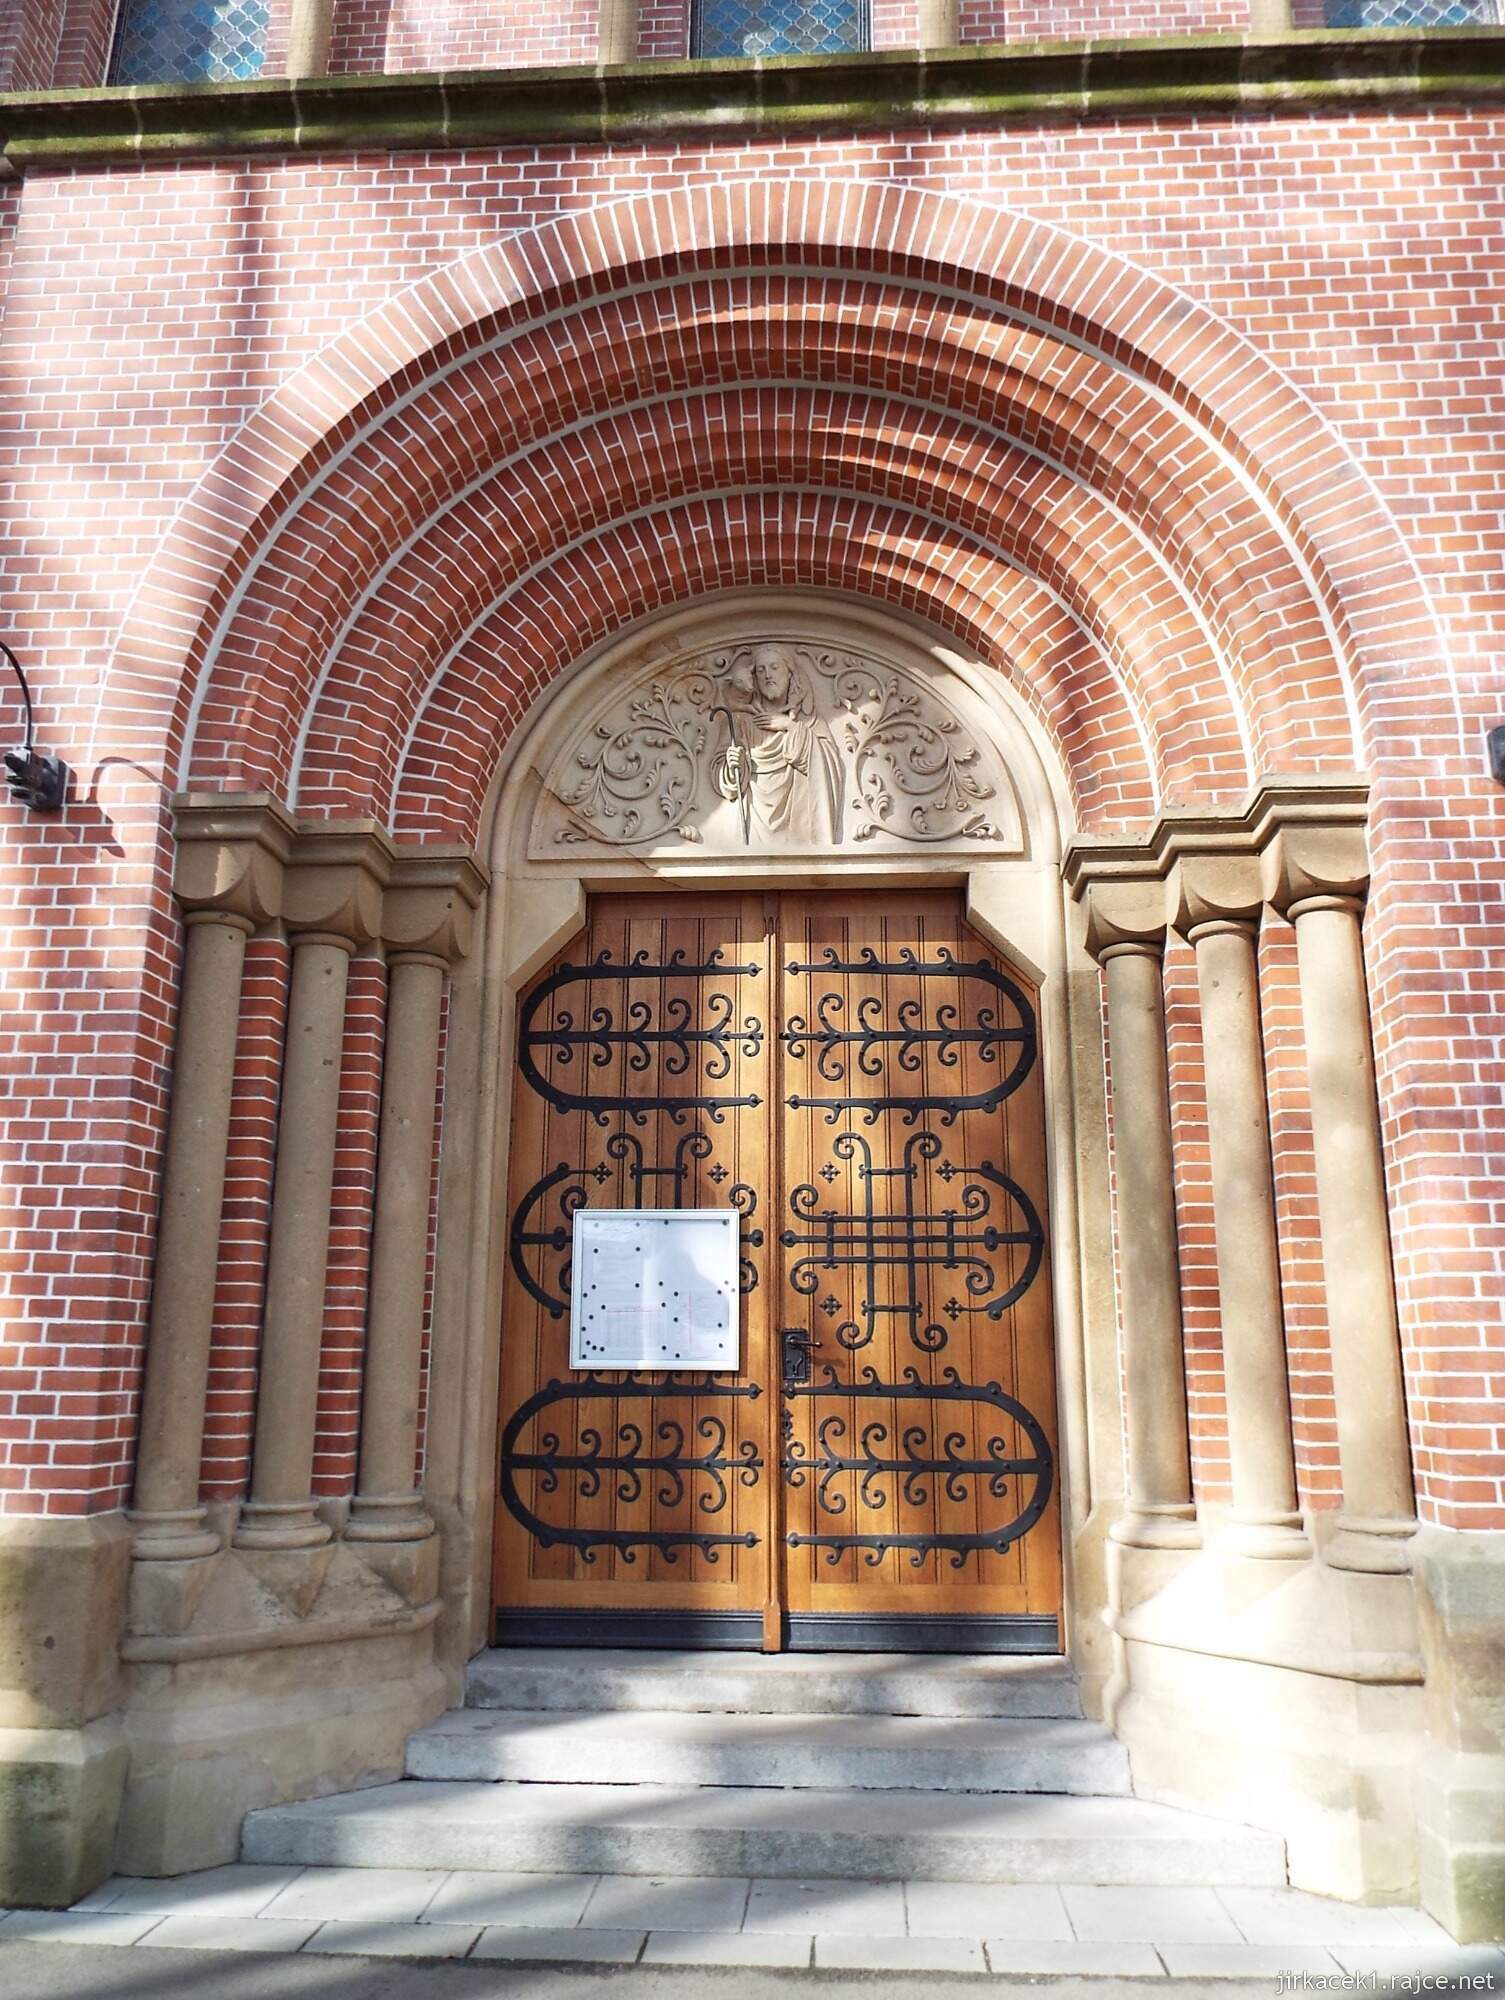 35 - Svitavy - Kostel sv. Josefa 05 - hlavní vchod s ústupkovým portálem, v jehož tympanonu se nachází reliéf Ježíše Krista jako Dobrého pastýře.